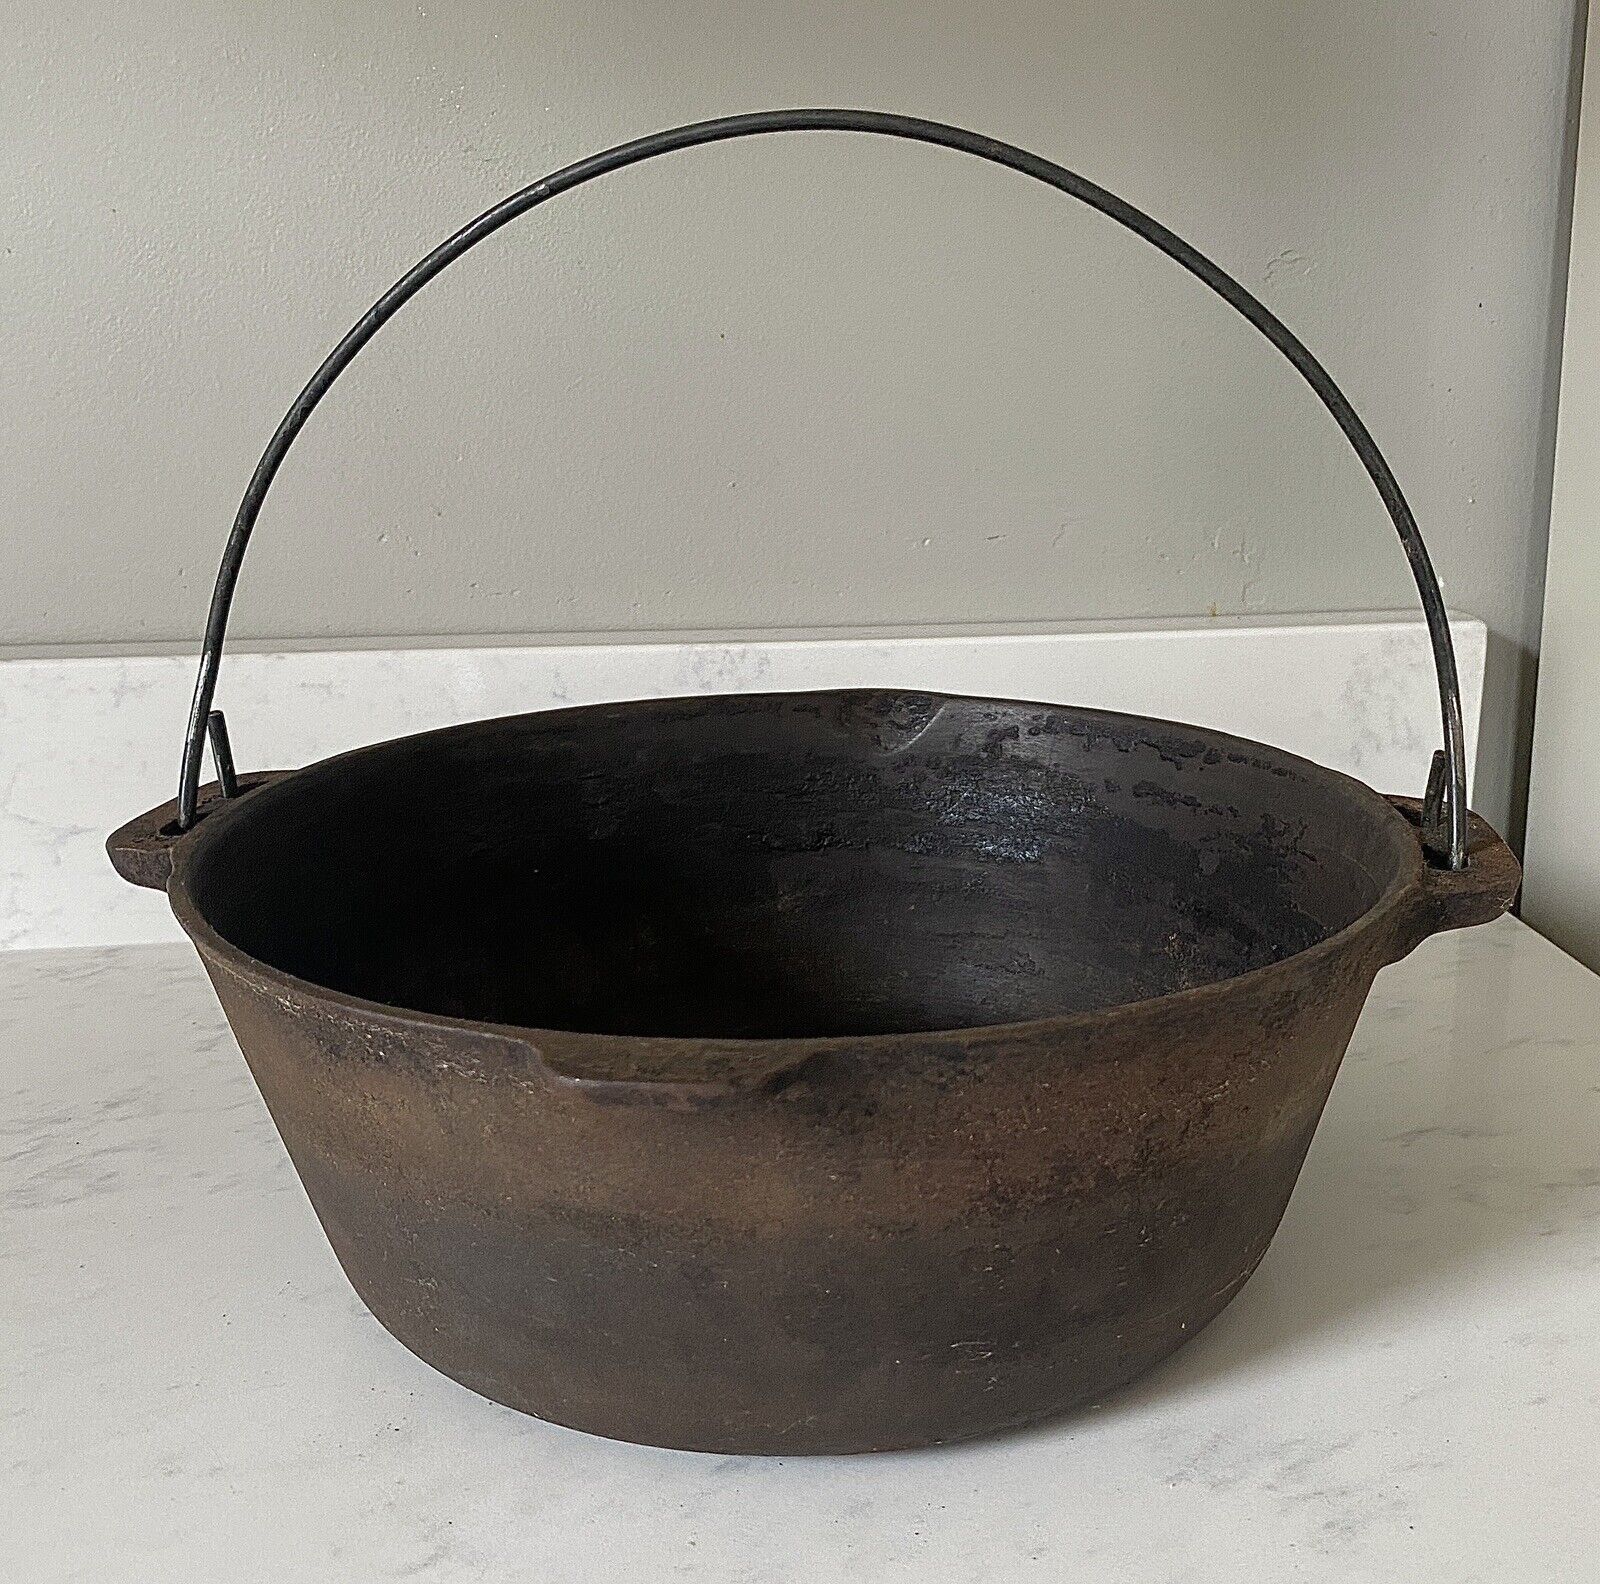 Large 12” Antique Cast Iron Dutch Oven Cauldron Pot Roaster With Handle Vintage